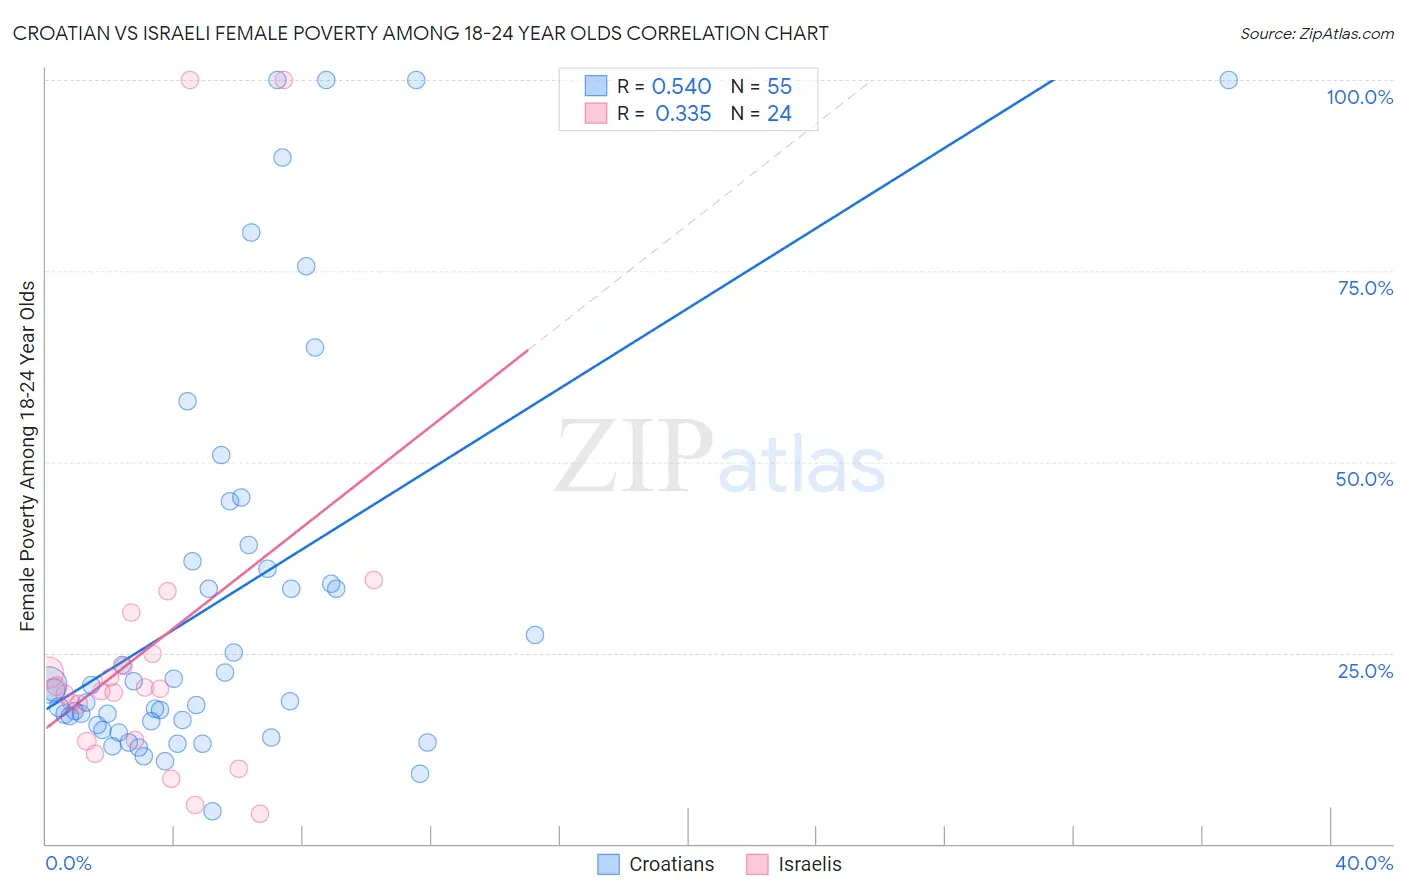 Croatian vs Israeli Female Poverty Among 18-24 Year Olds